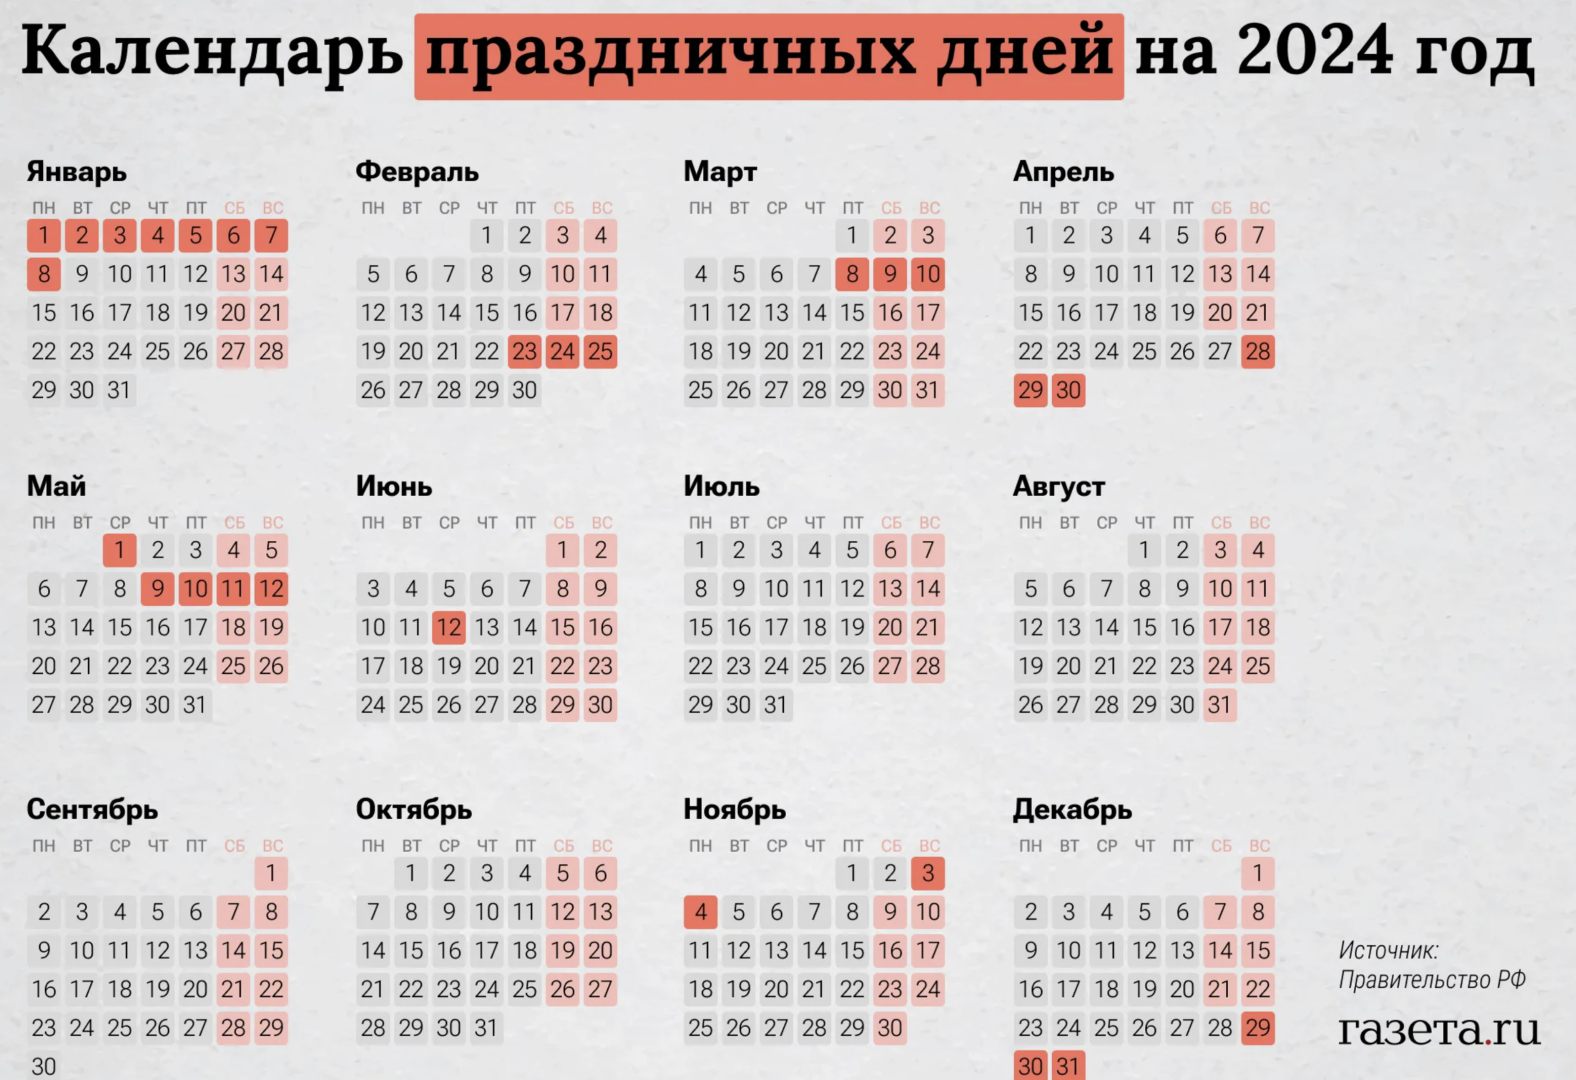 Майские праздники 2024 официальные праздничные дни. Календарь выходных. Выходные и праздничные дни в 2024 в России. Кадендарьпраздников. Нерабочие праздничные дни в 2024 году в России.